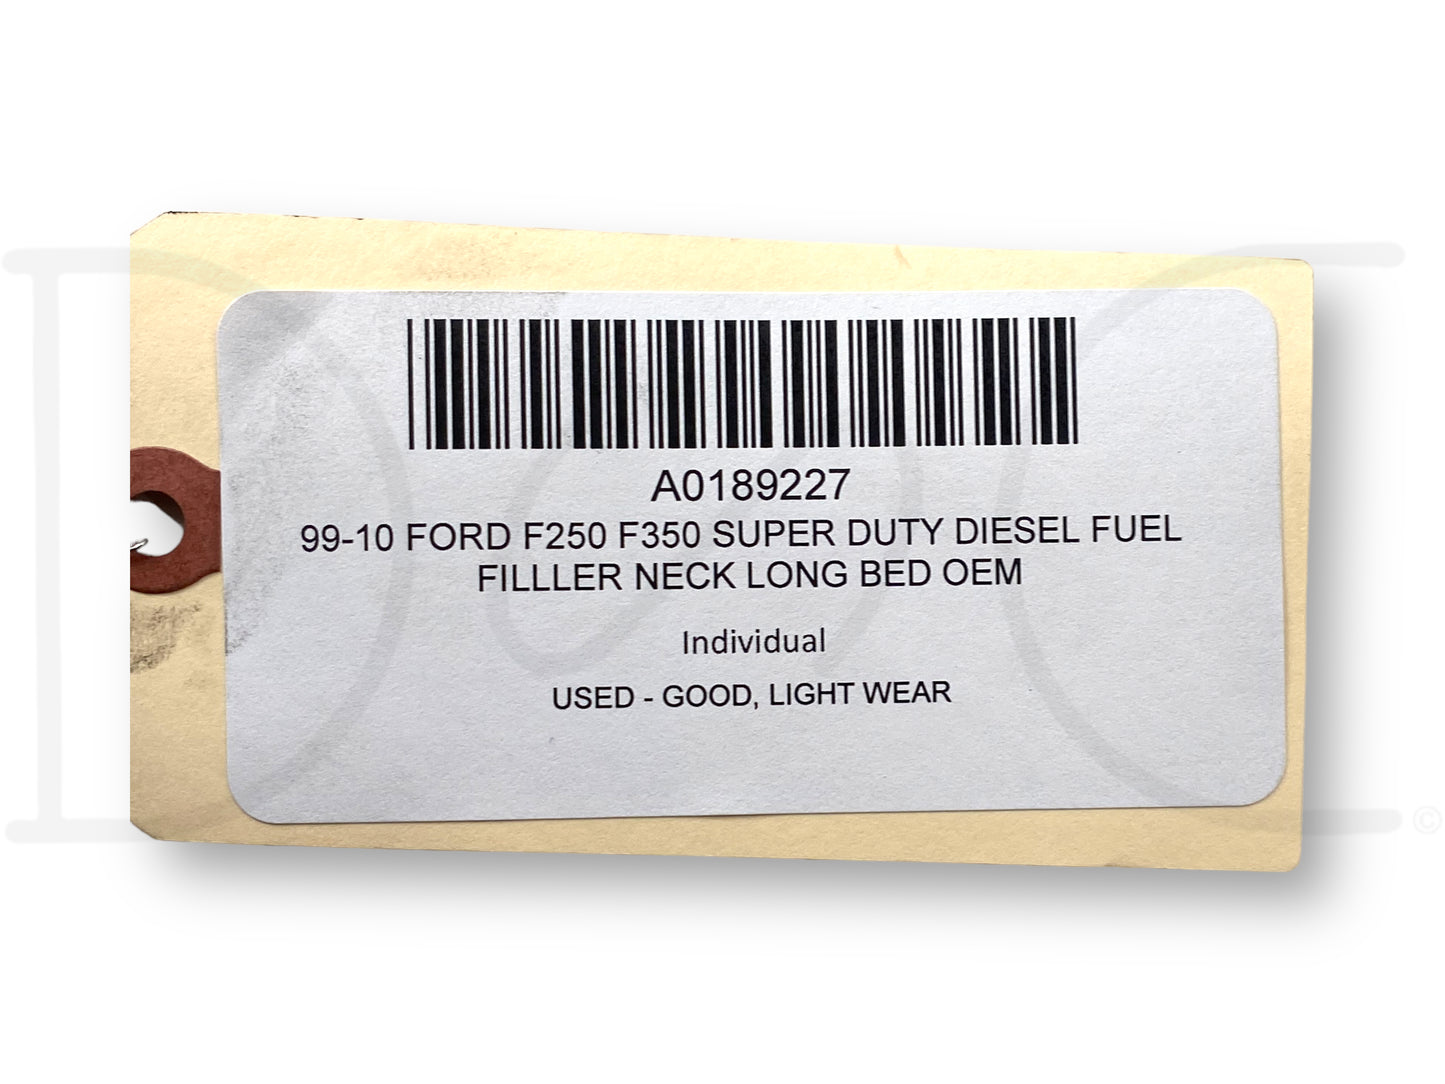 99-10 Ford F250 F350 Super Duty Diesel Fuel Filller Neck Long Bed OEM